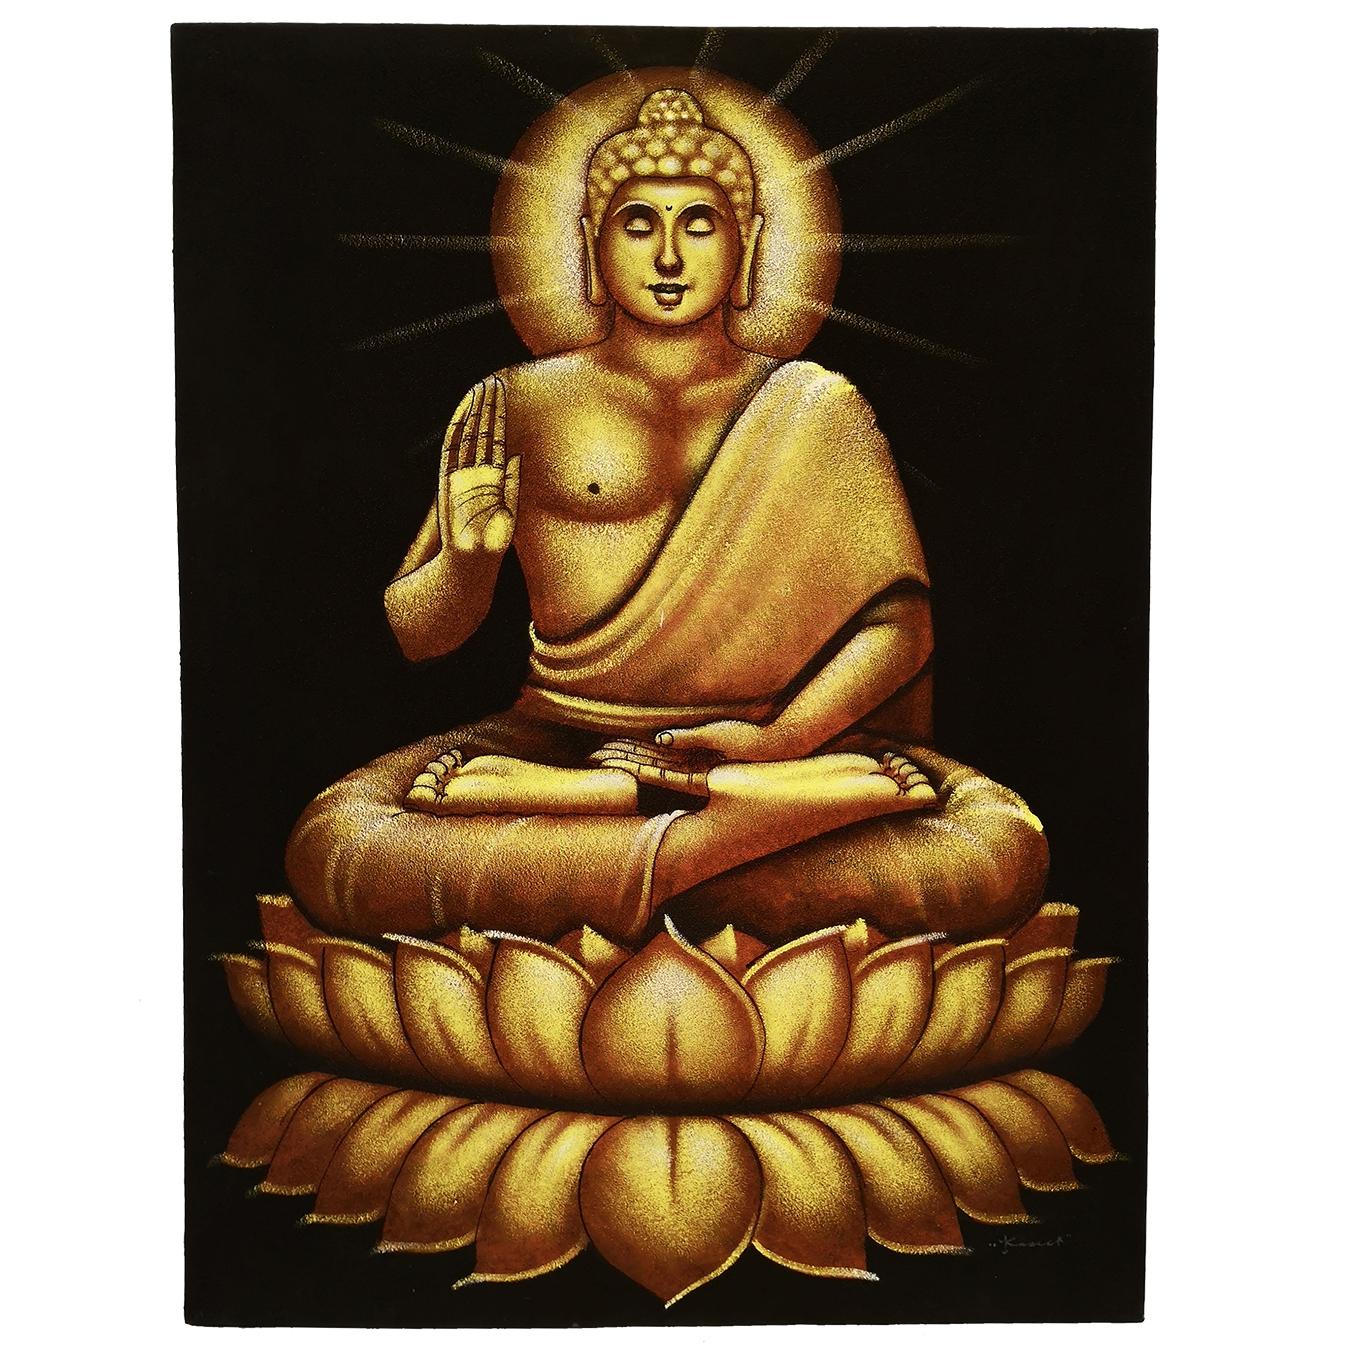 Cuadro de Buda sentado